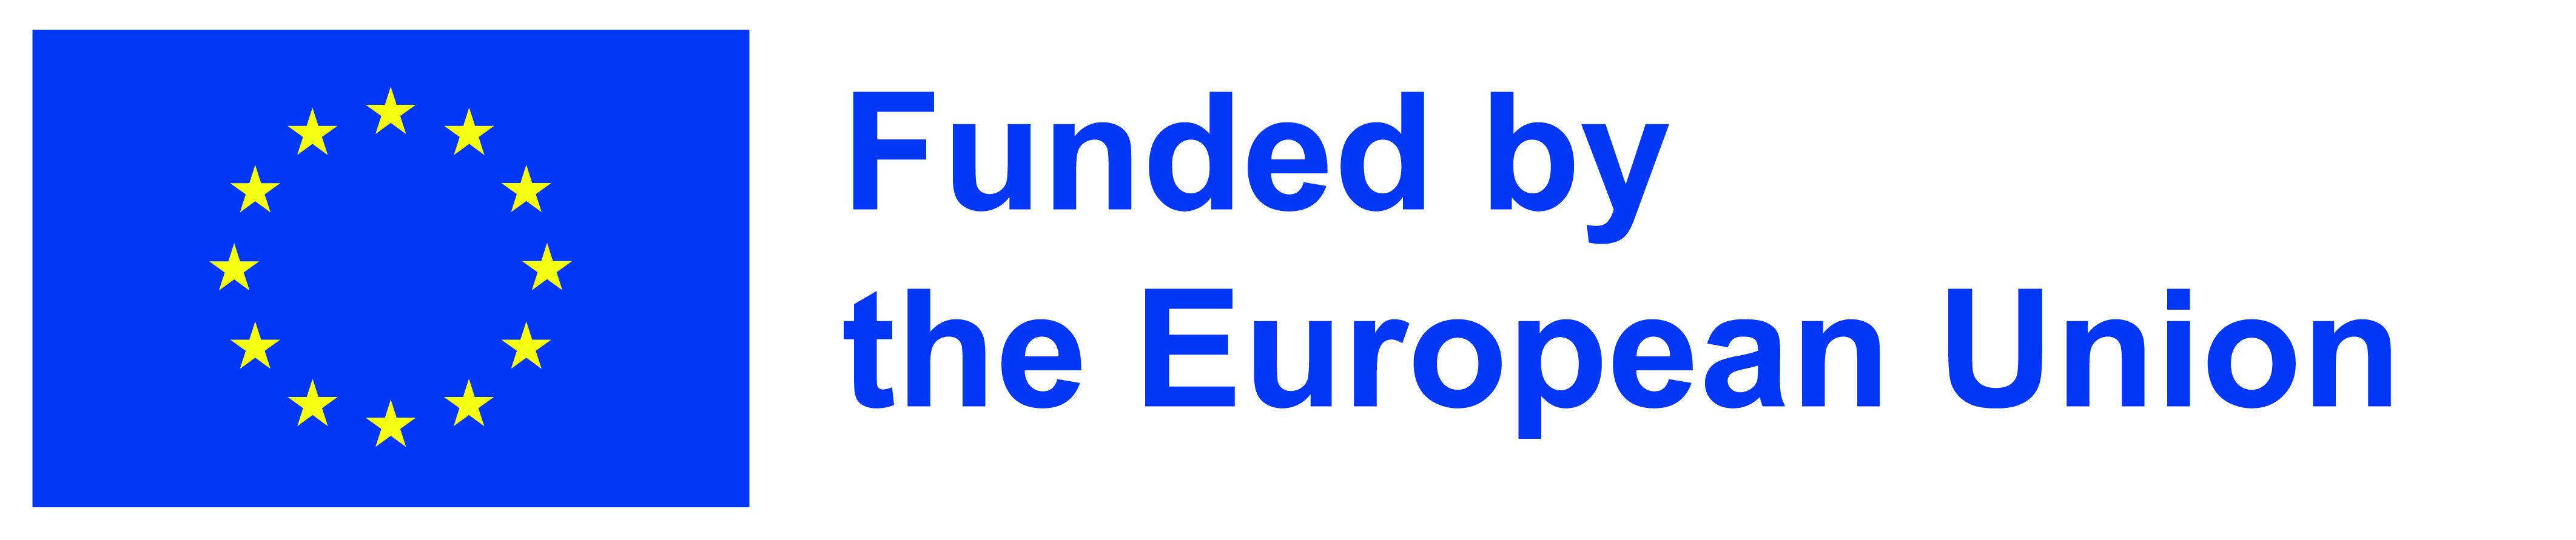 EU-funding